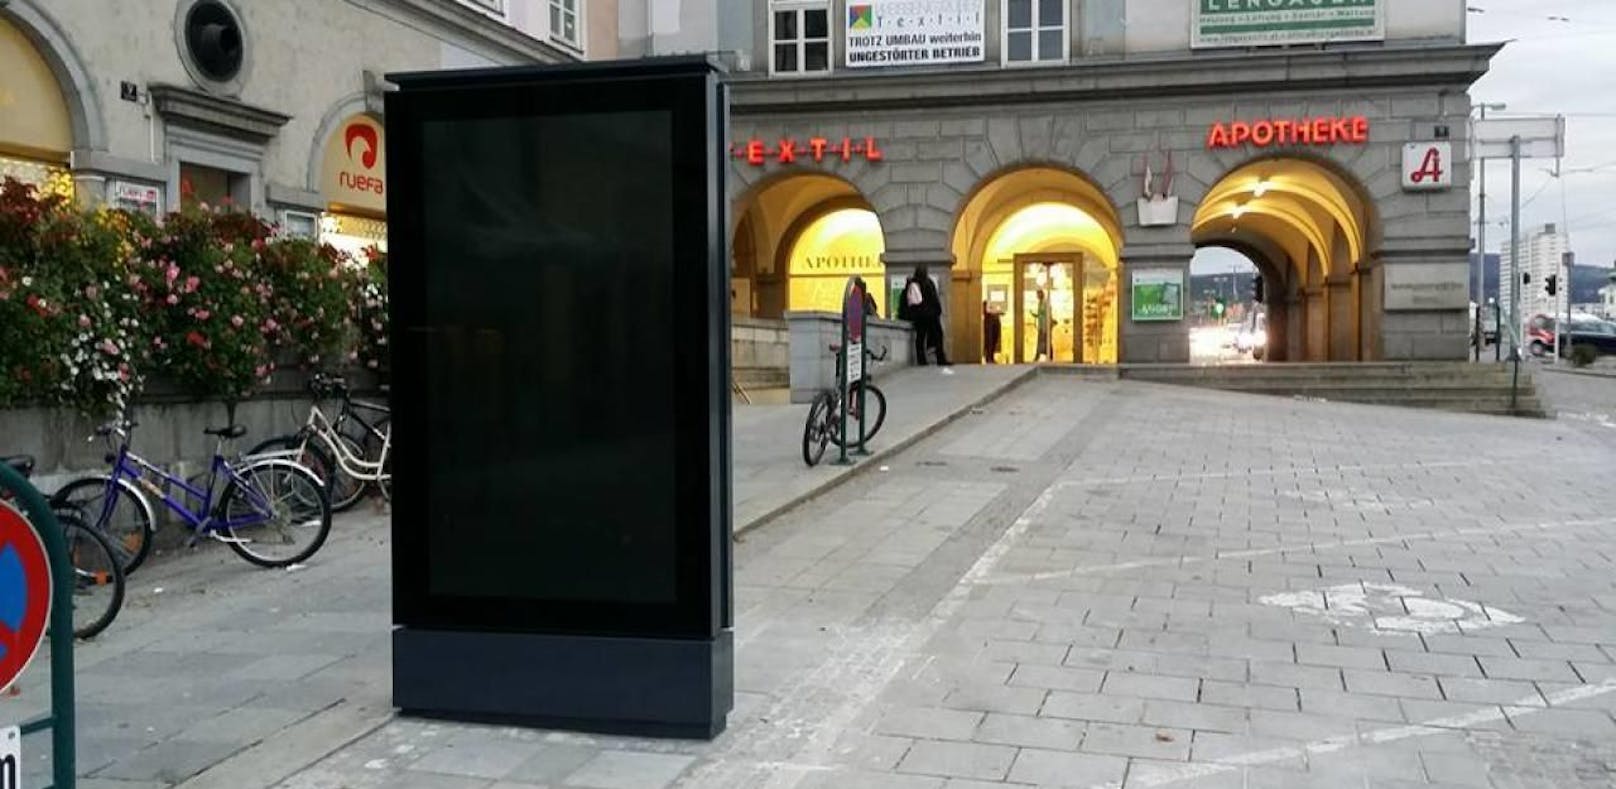 Linz bekommt die ersten Infoscreens. Insgesamt 14 Stück sollen in der Innenstadt (wie hier am Hauptplatz) aufgestellt werden.